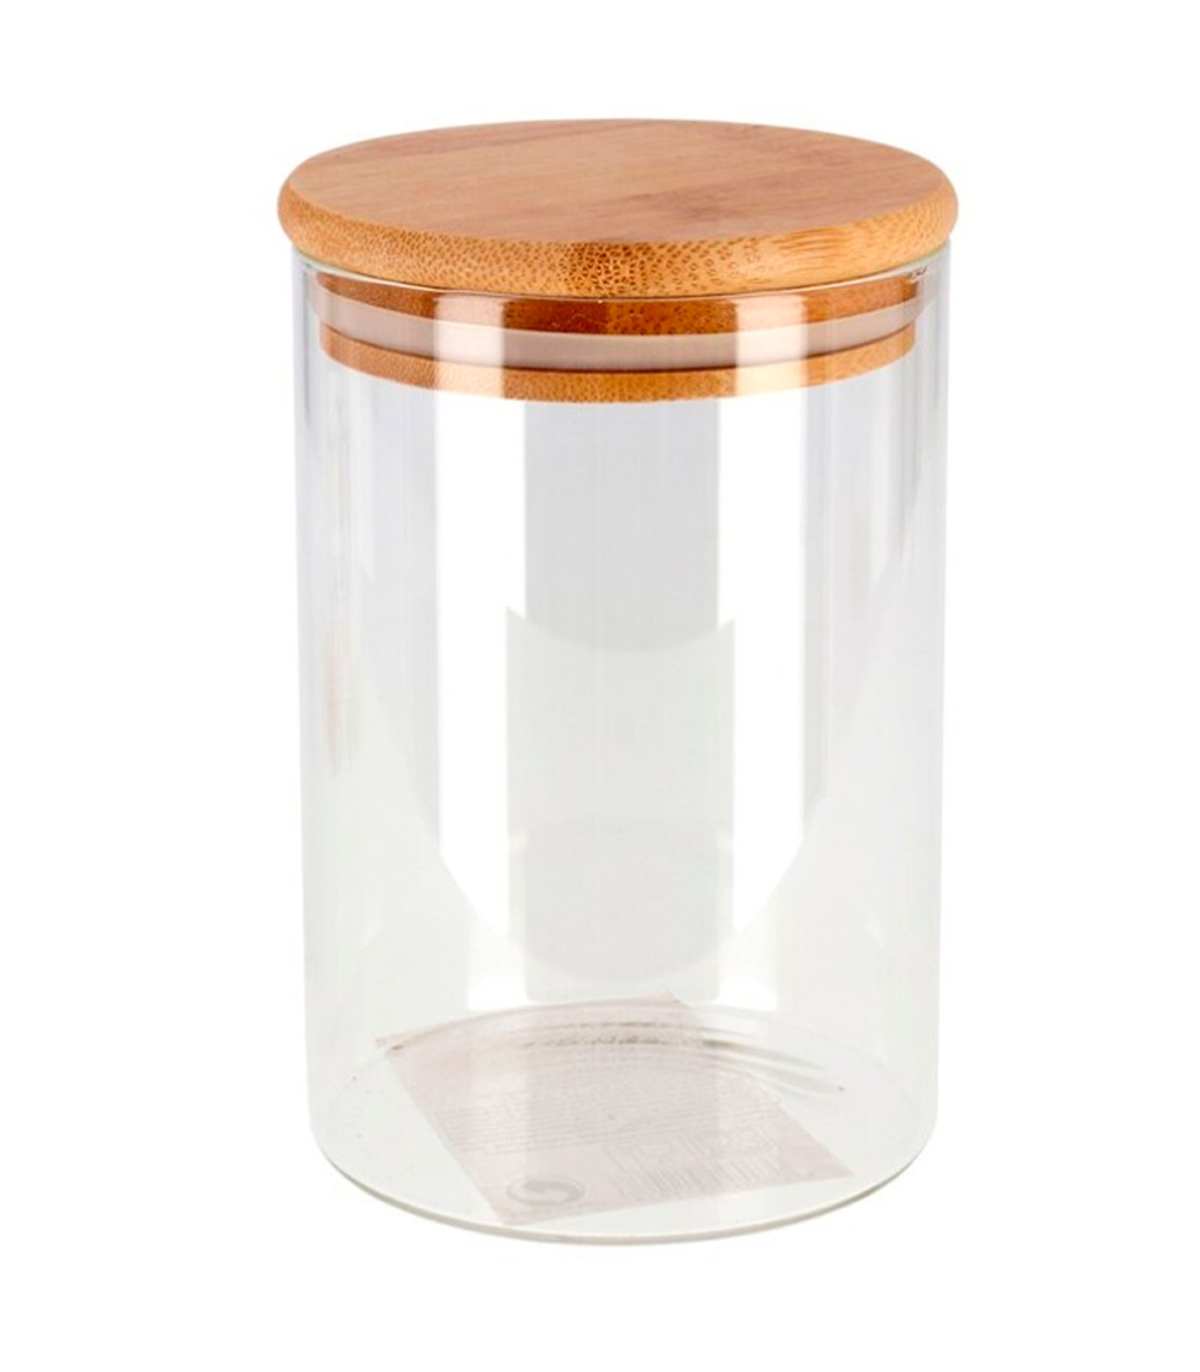 Tradineur - Tarro de vidrio borosilicato con tapa de bambú, bote, frasco,  recipiente para guardar café, pasta, galletas, legumbr